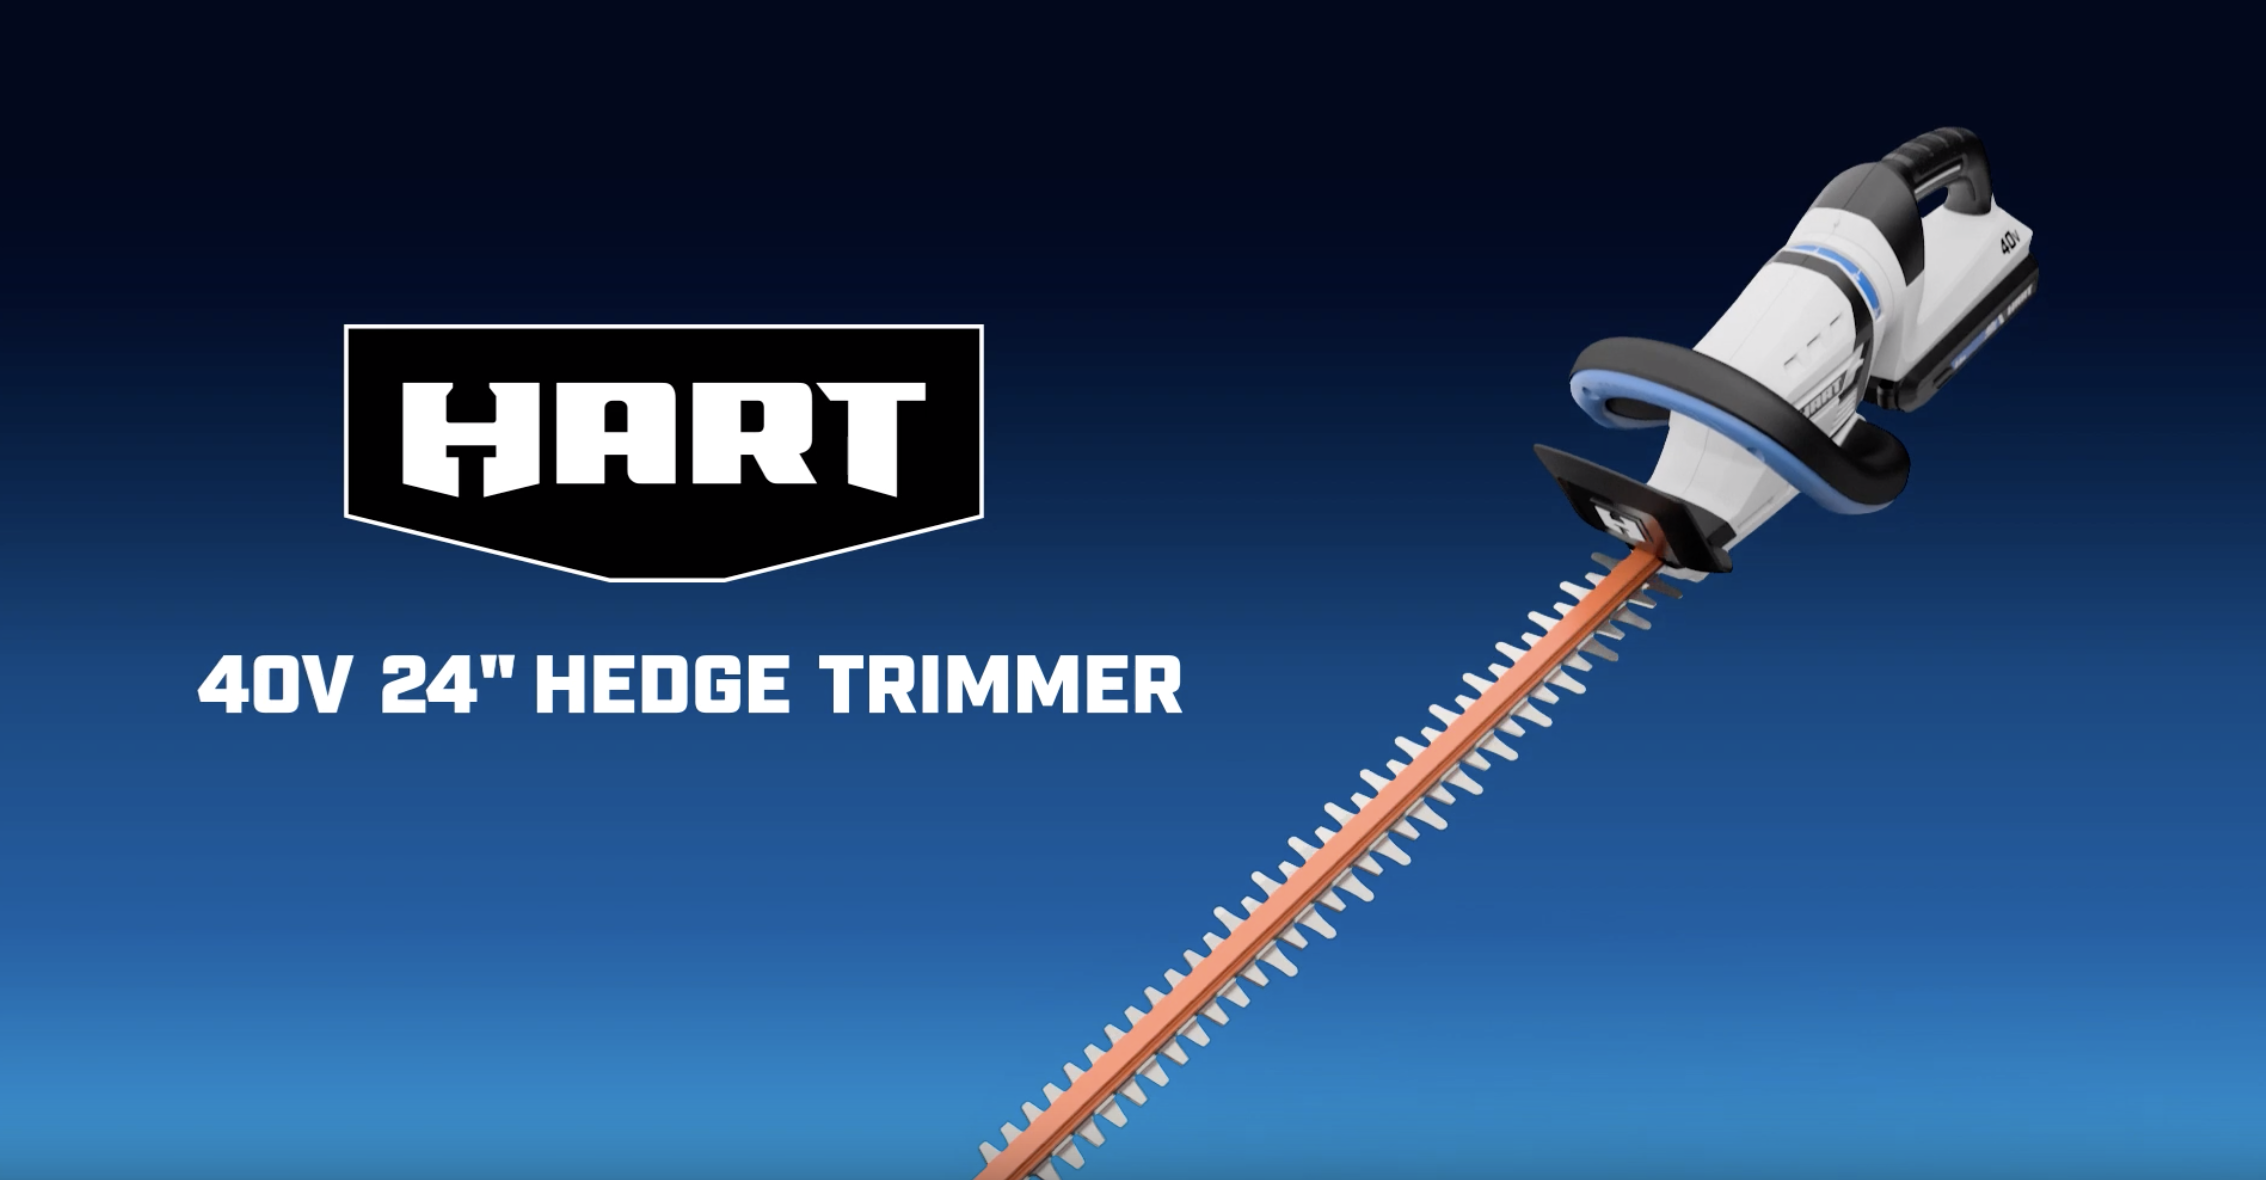 40V 24" Cordless Hedge Trimmer Kitbanner image